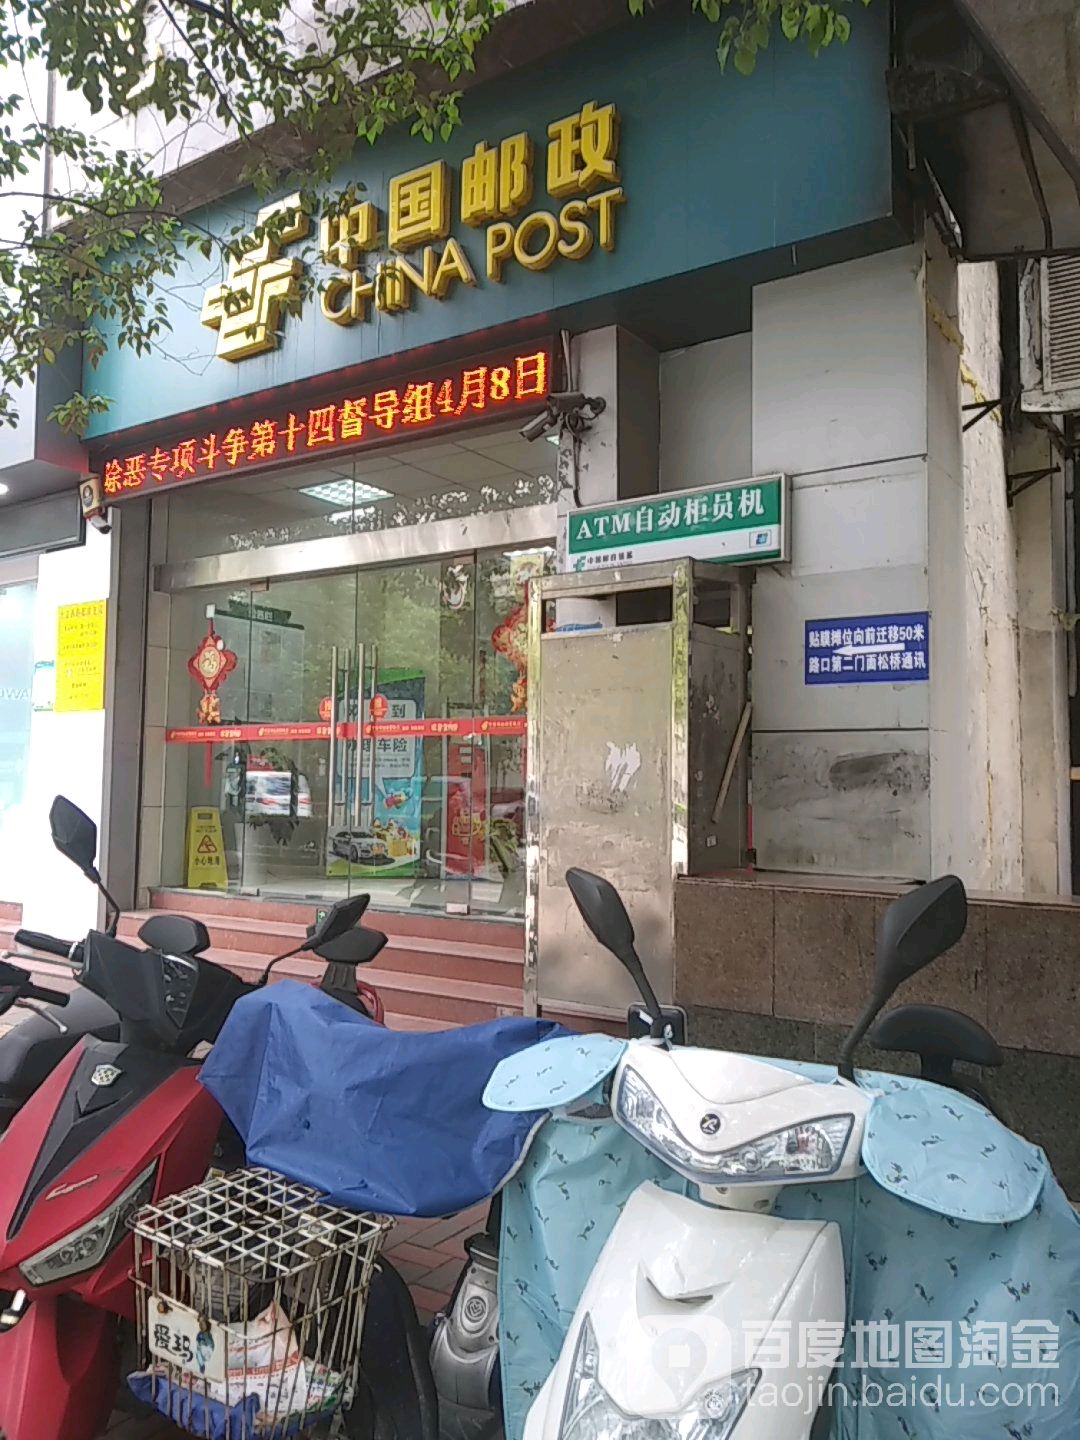 中國郵政(北京西路)